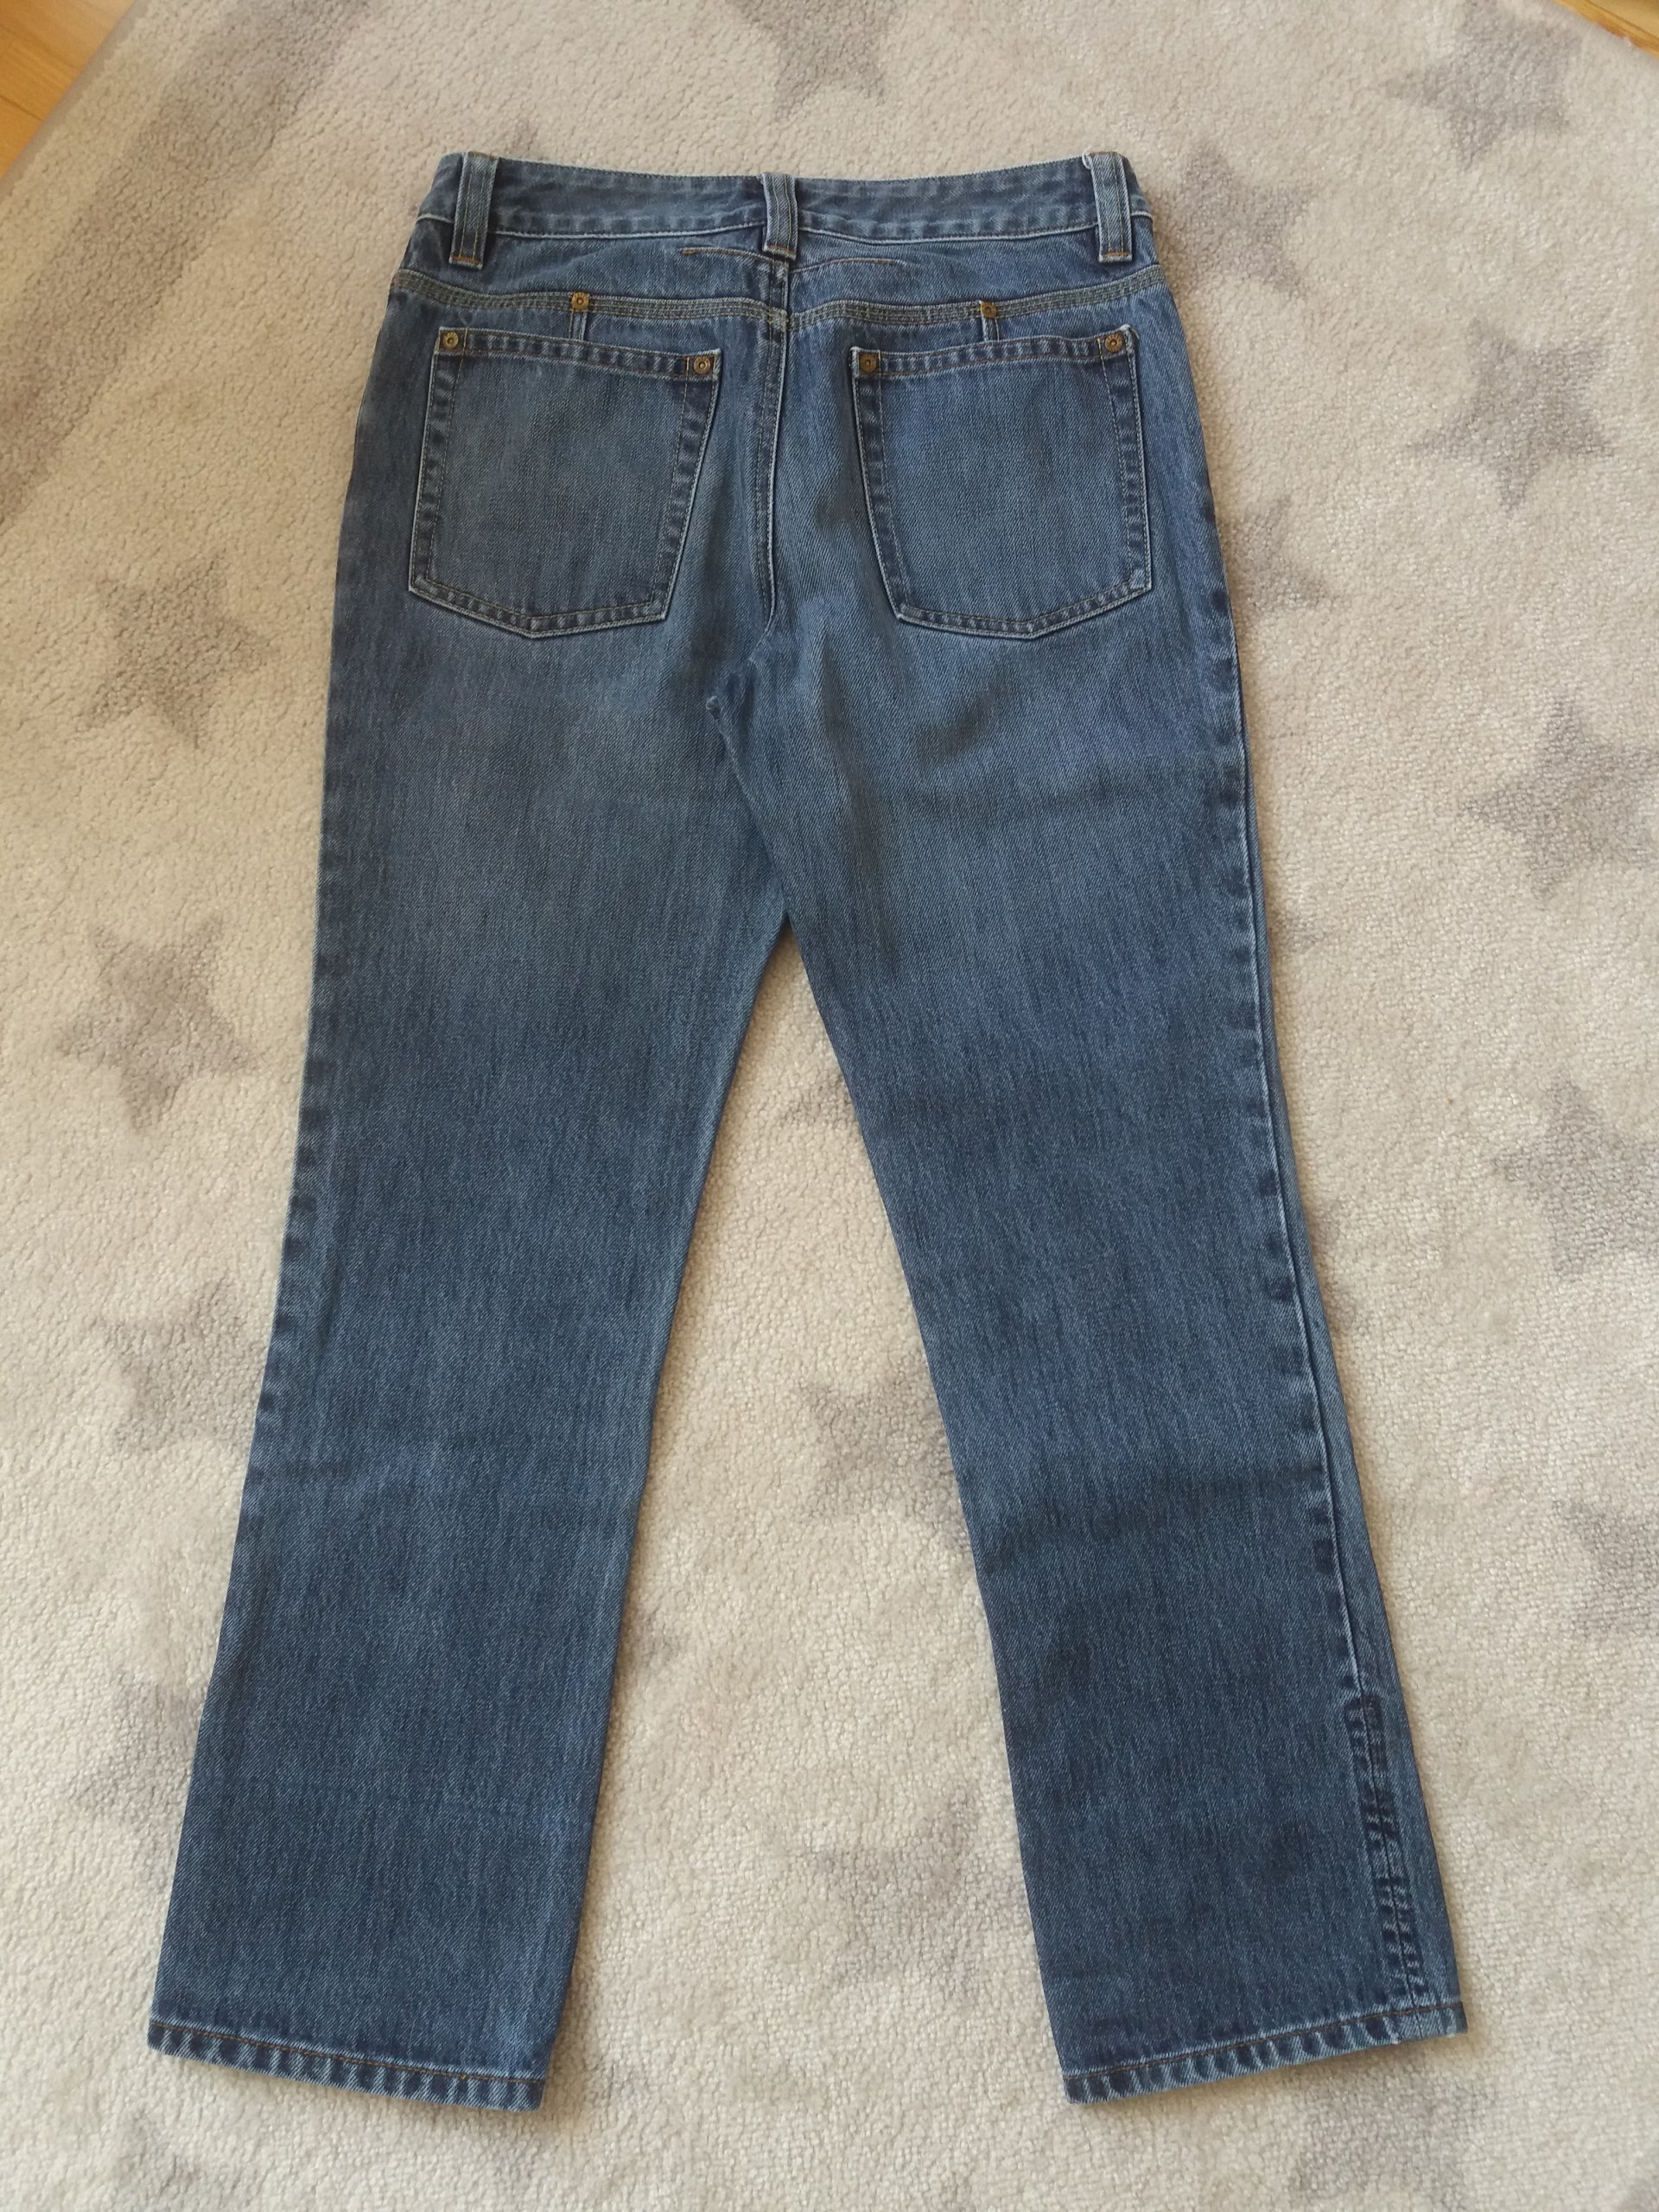 KAREN MILLEN spodnie 38/M jeansy SUPER!!! - 7012391862 - oficjalne